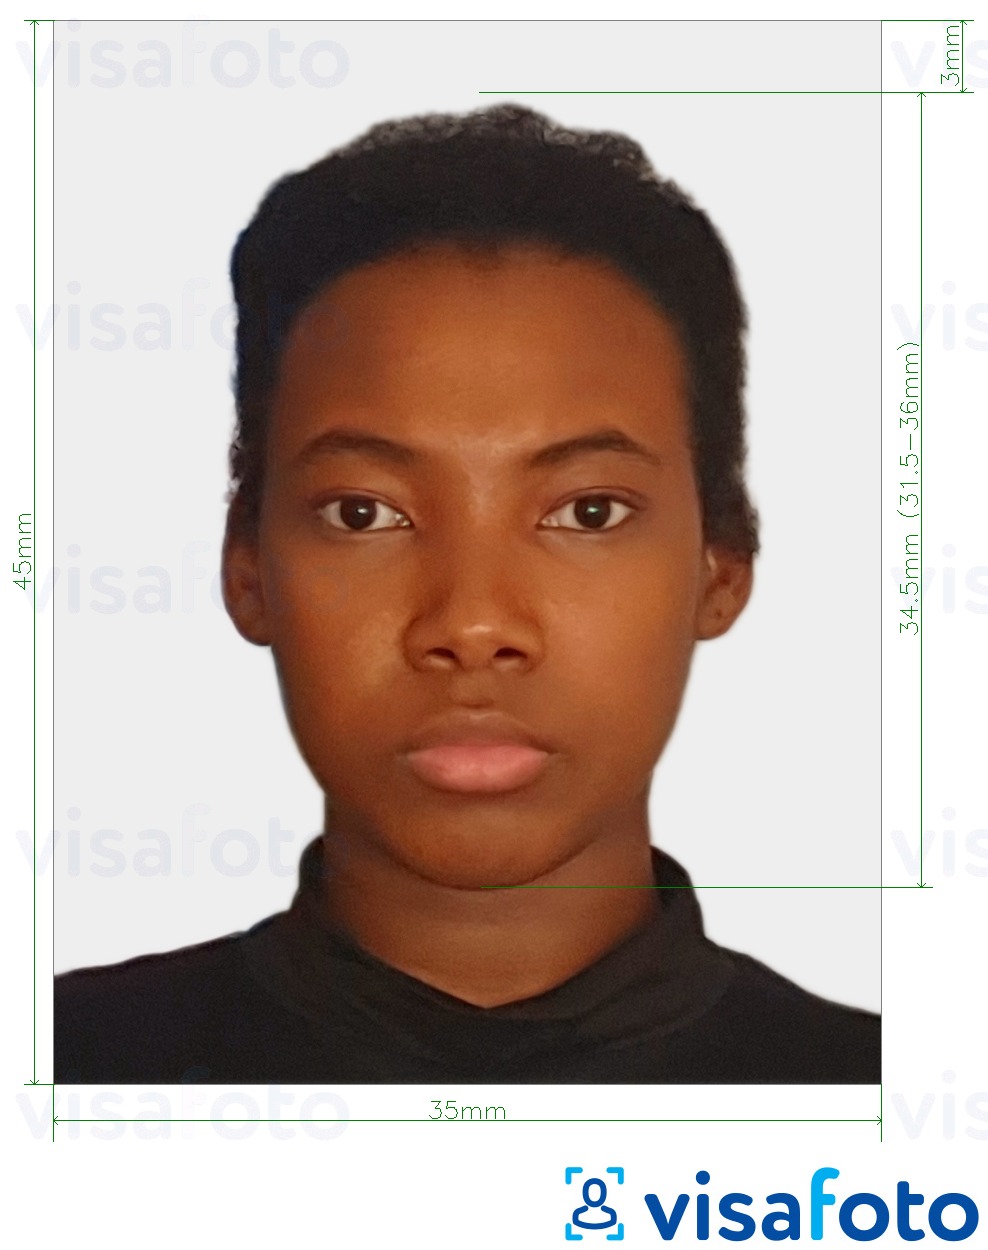 Contoh foto untuk Pasport Suriname 45x35 mm (1.77x1.37 inci) dengan spesifikasi saiz yang tepat.